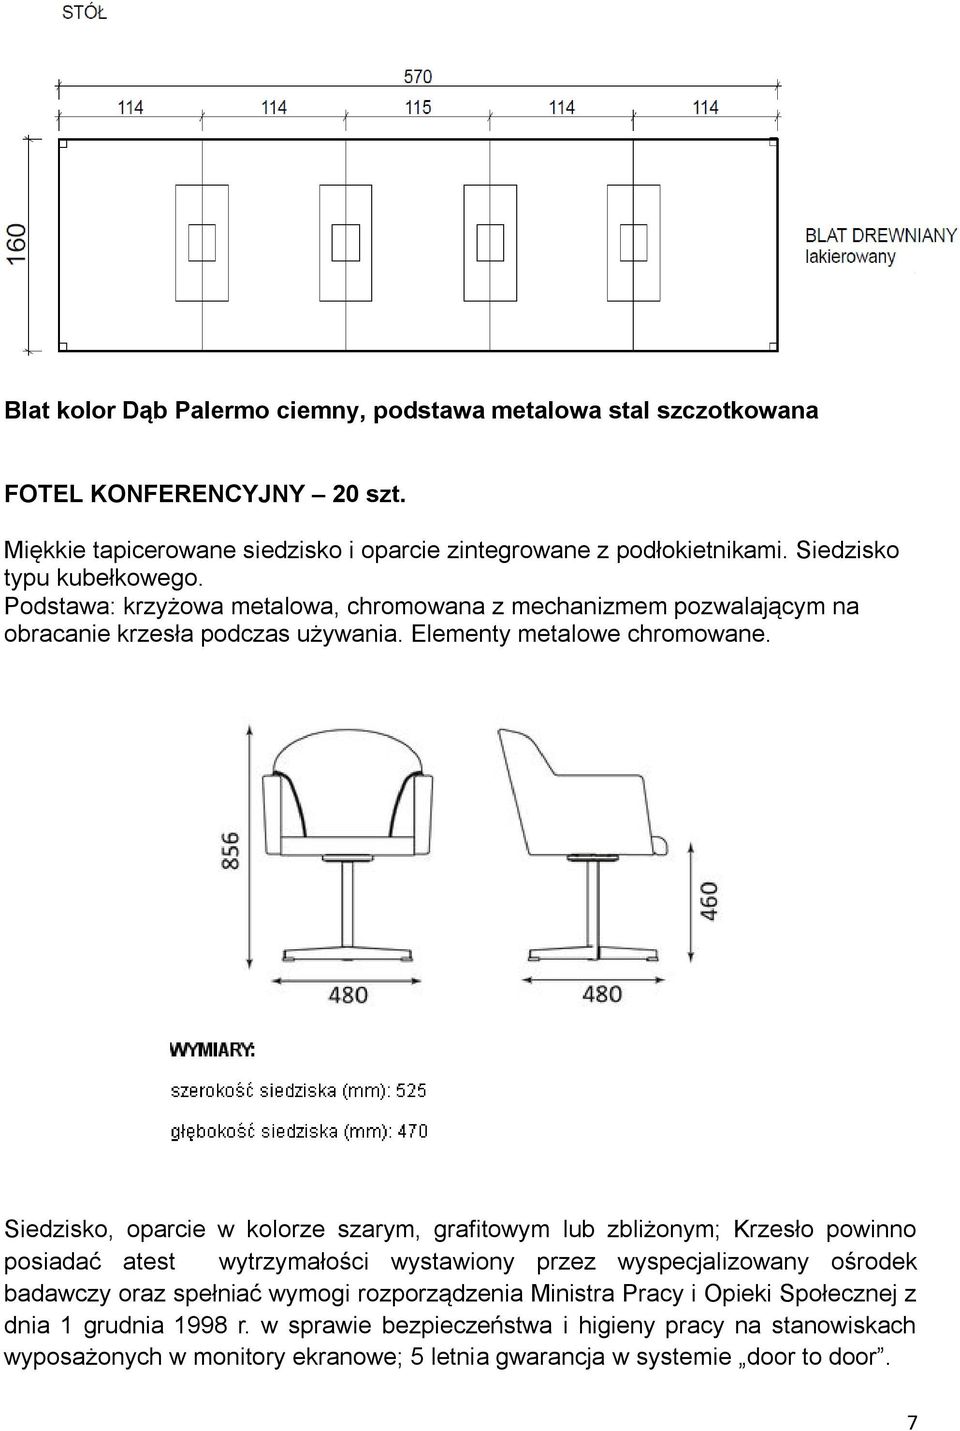 Siedzisko, oparcie w kolorze szarym, grafitowym lub zbliżonym; Krzesło powinno posiadać atest wytrzymałości wystawiony przez wyspecjalizowany ośrodek badawczy oraz spełniać wymogi